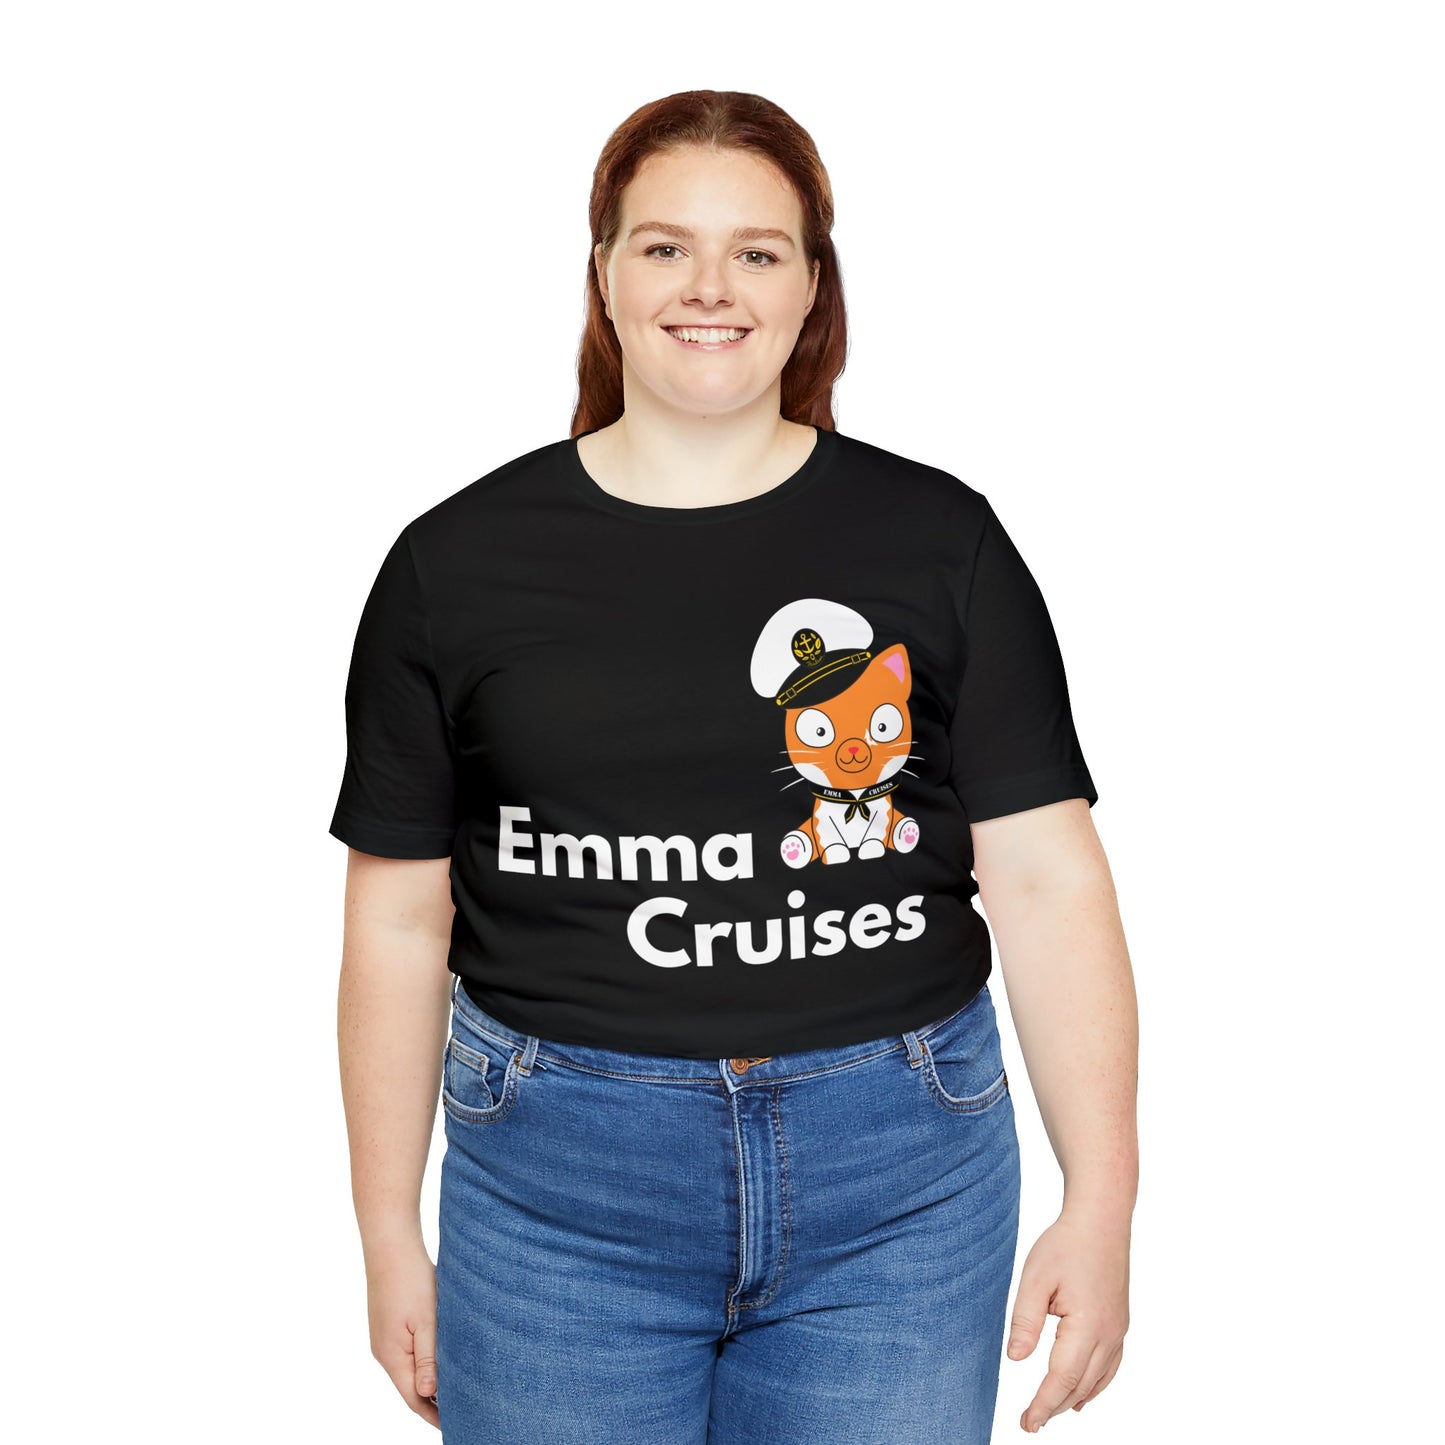 Emma Cruises - UNISEX T-Shirt (UK)